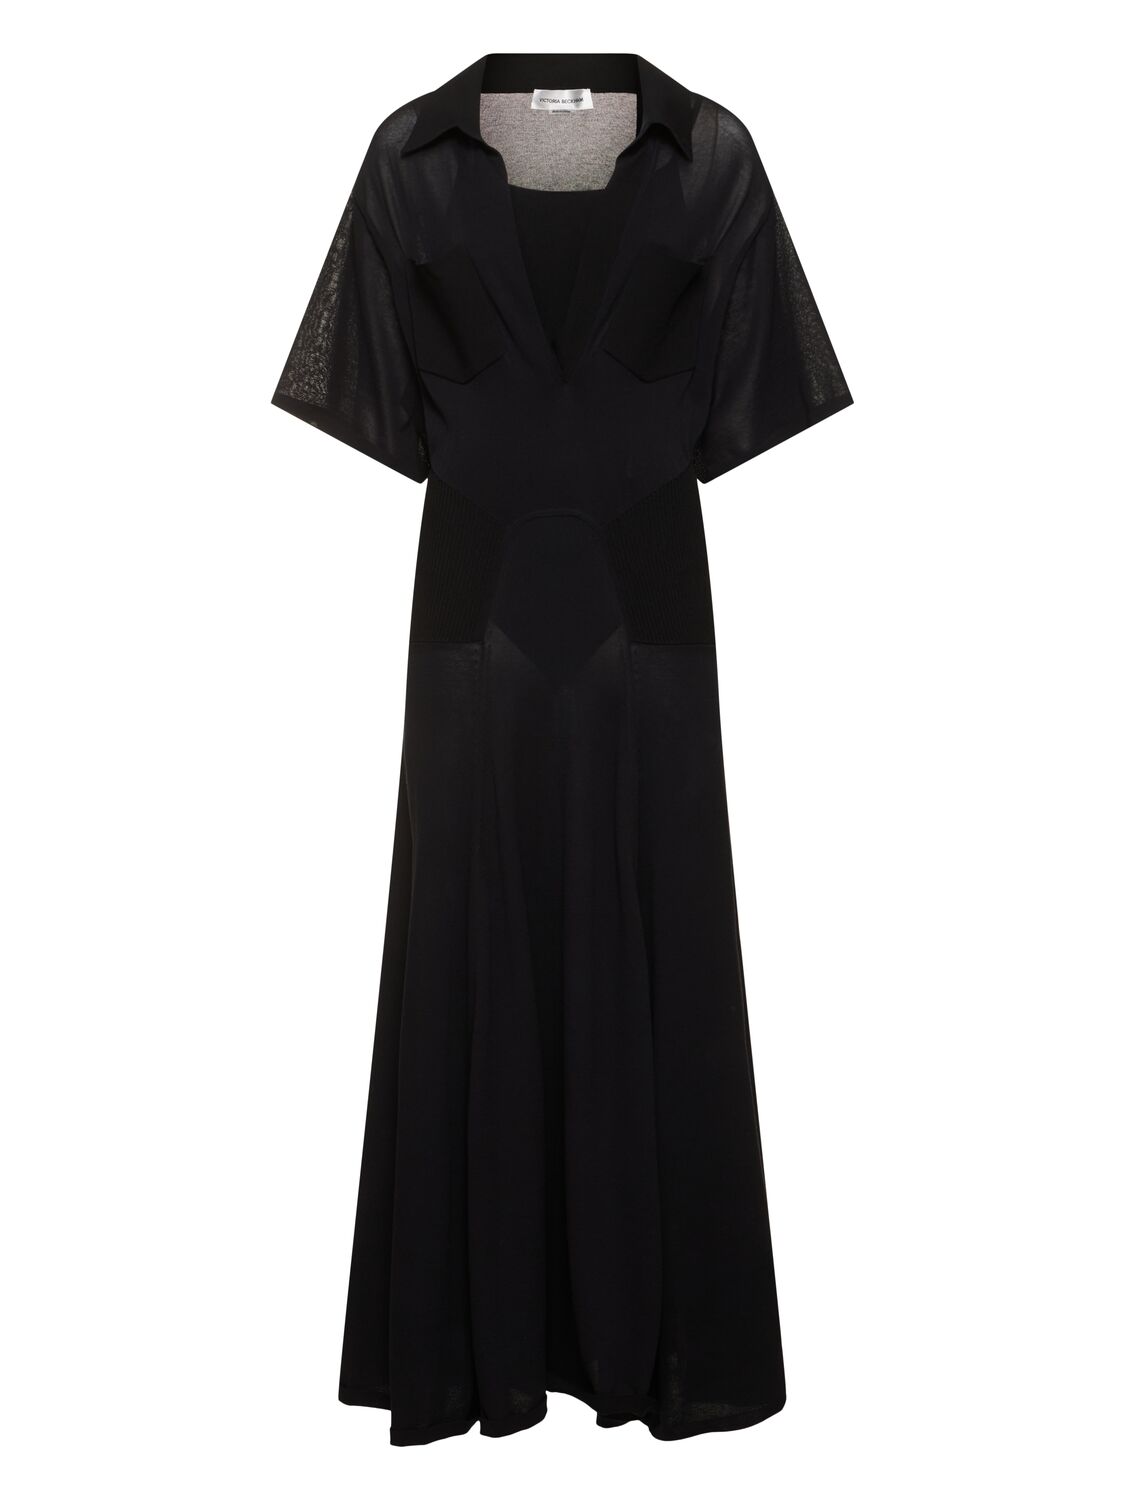 Victoria Beckham Light Cotton Blend Knit Long Dress In Black